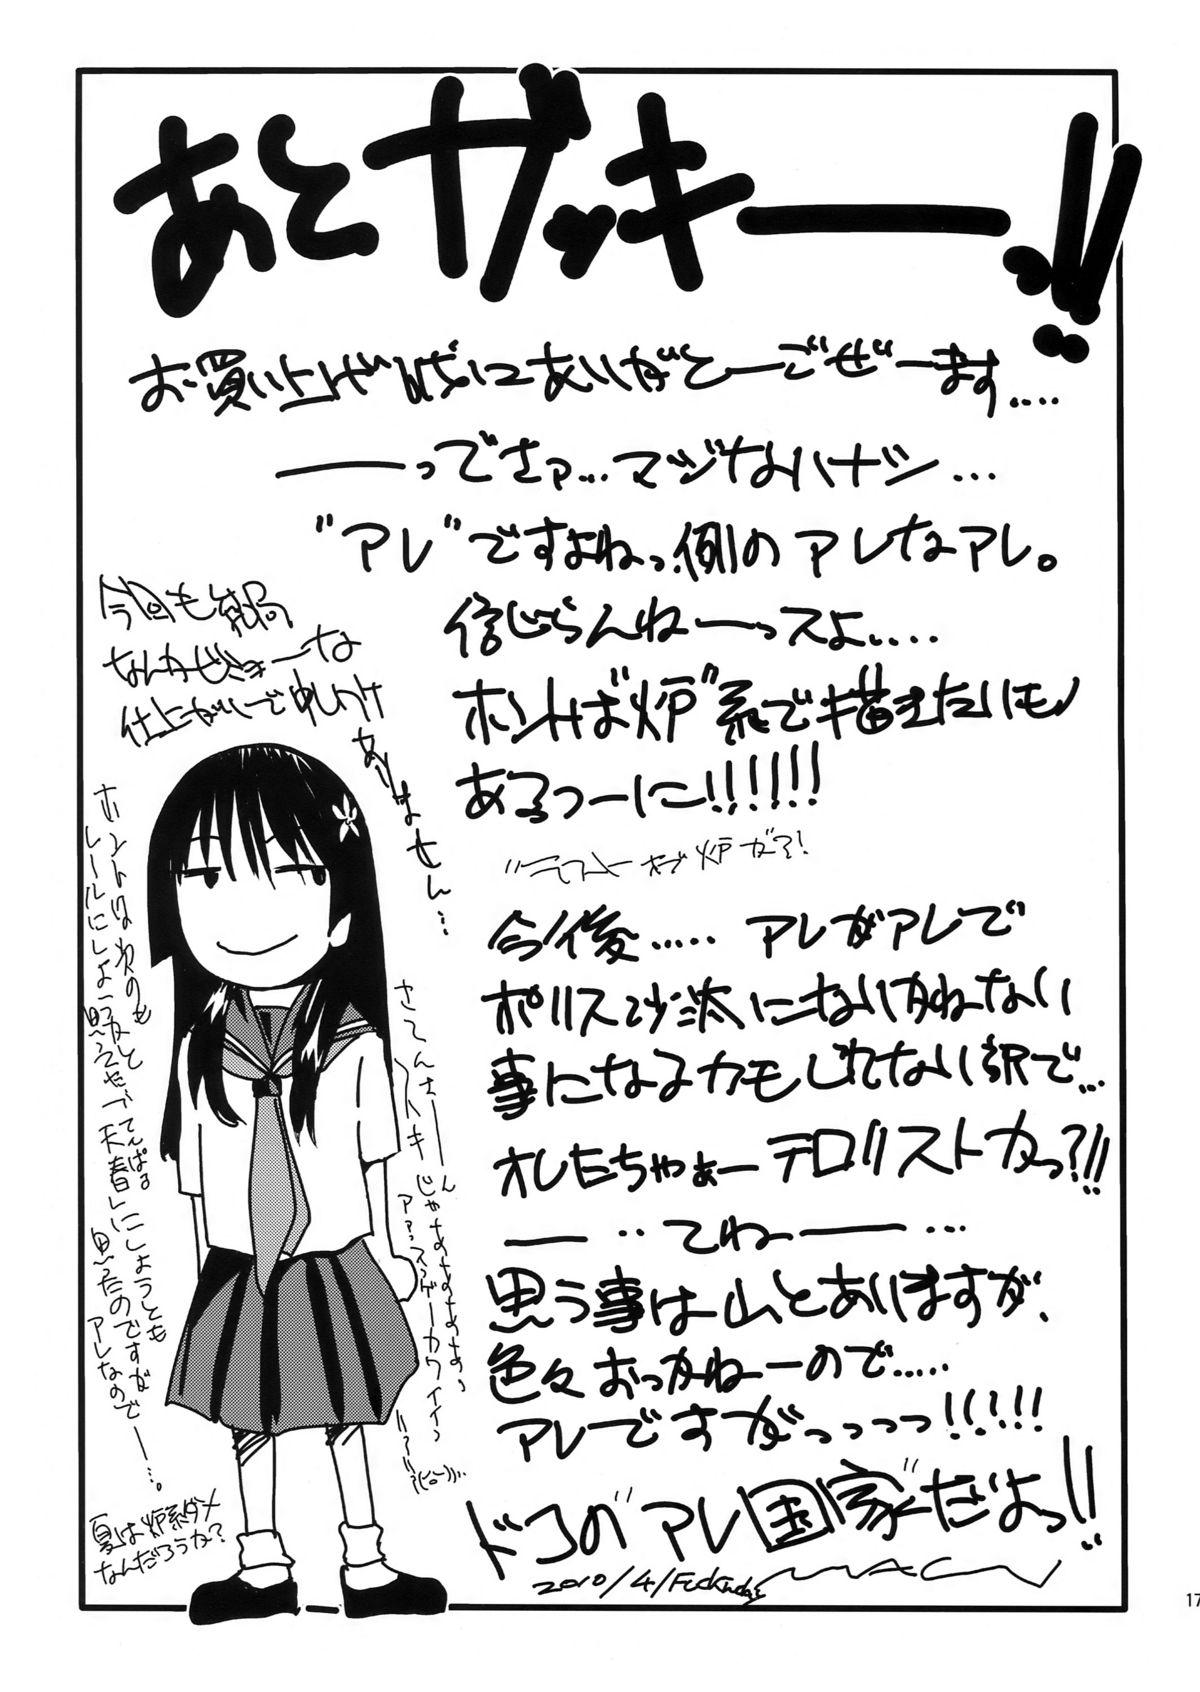 Milf Fuck HaruTen - Toaru kagaku no railgun Seduction - Page 17